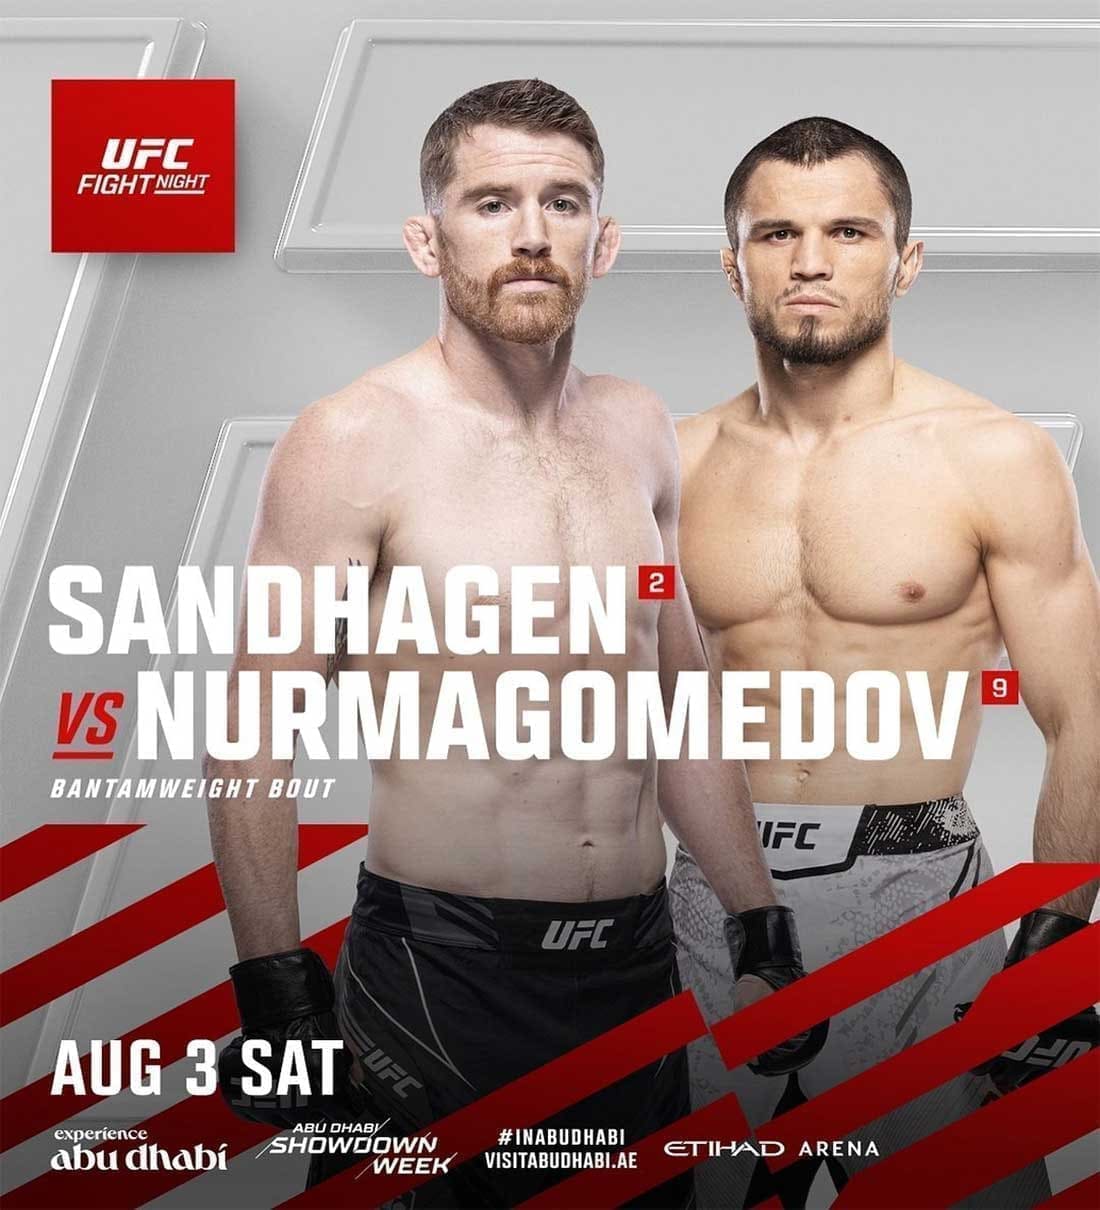 UFC on ABC 7: Сэндхаген - Нурмагомедов дата проведения, кард, участники и результаты